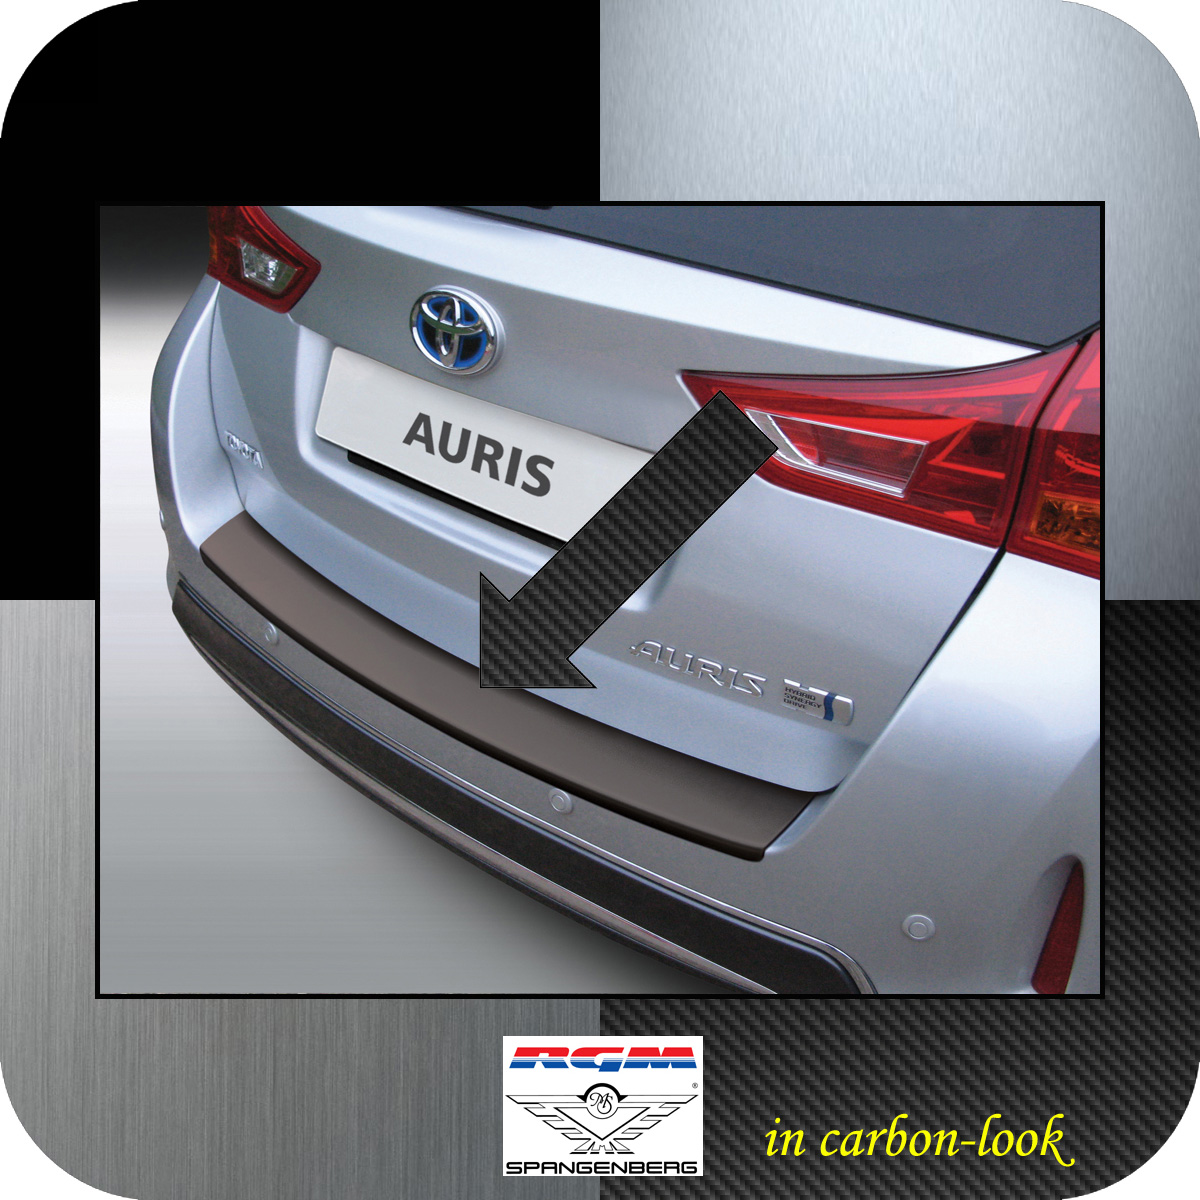 Ladekantenschutz Carbon-Look Toyota Auris II Touring vor Mopf 2013-15 3509706